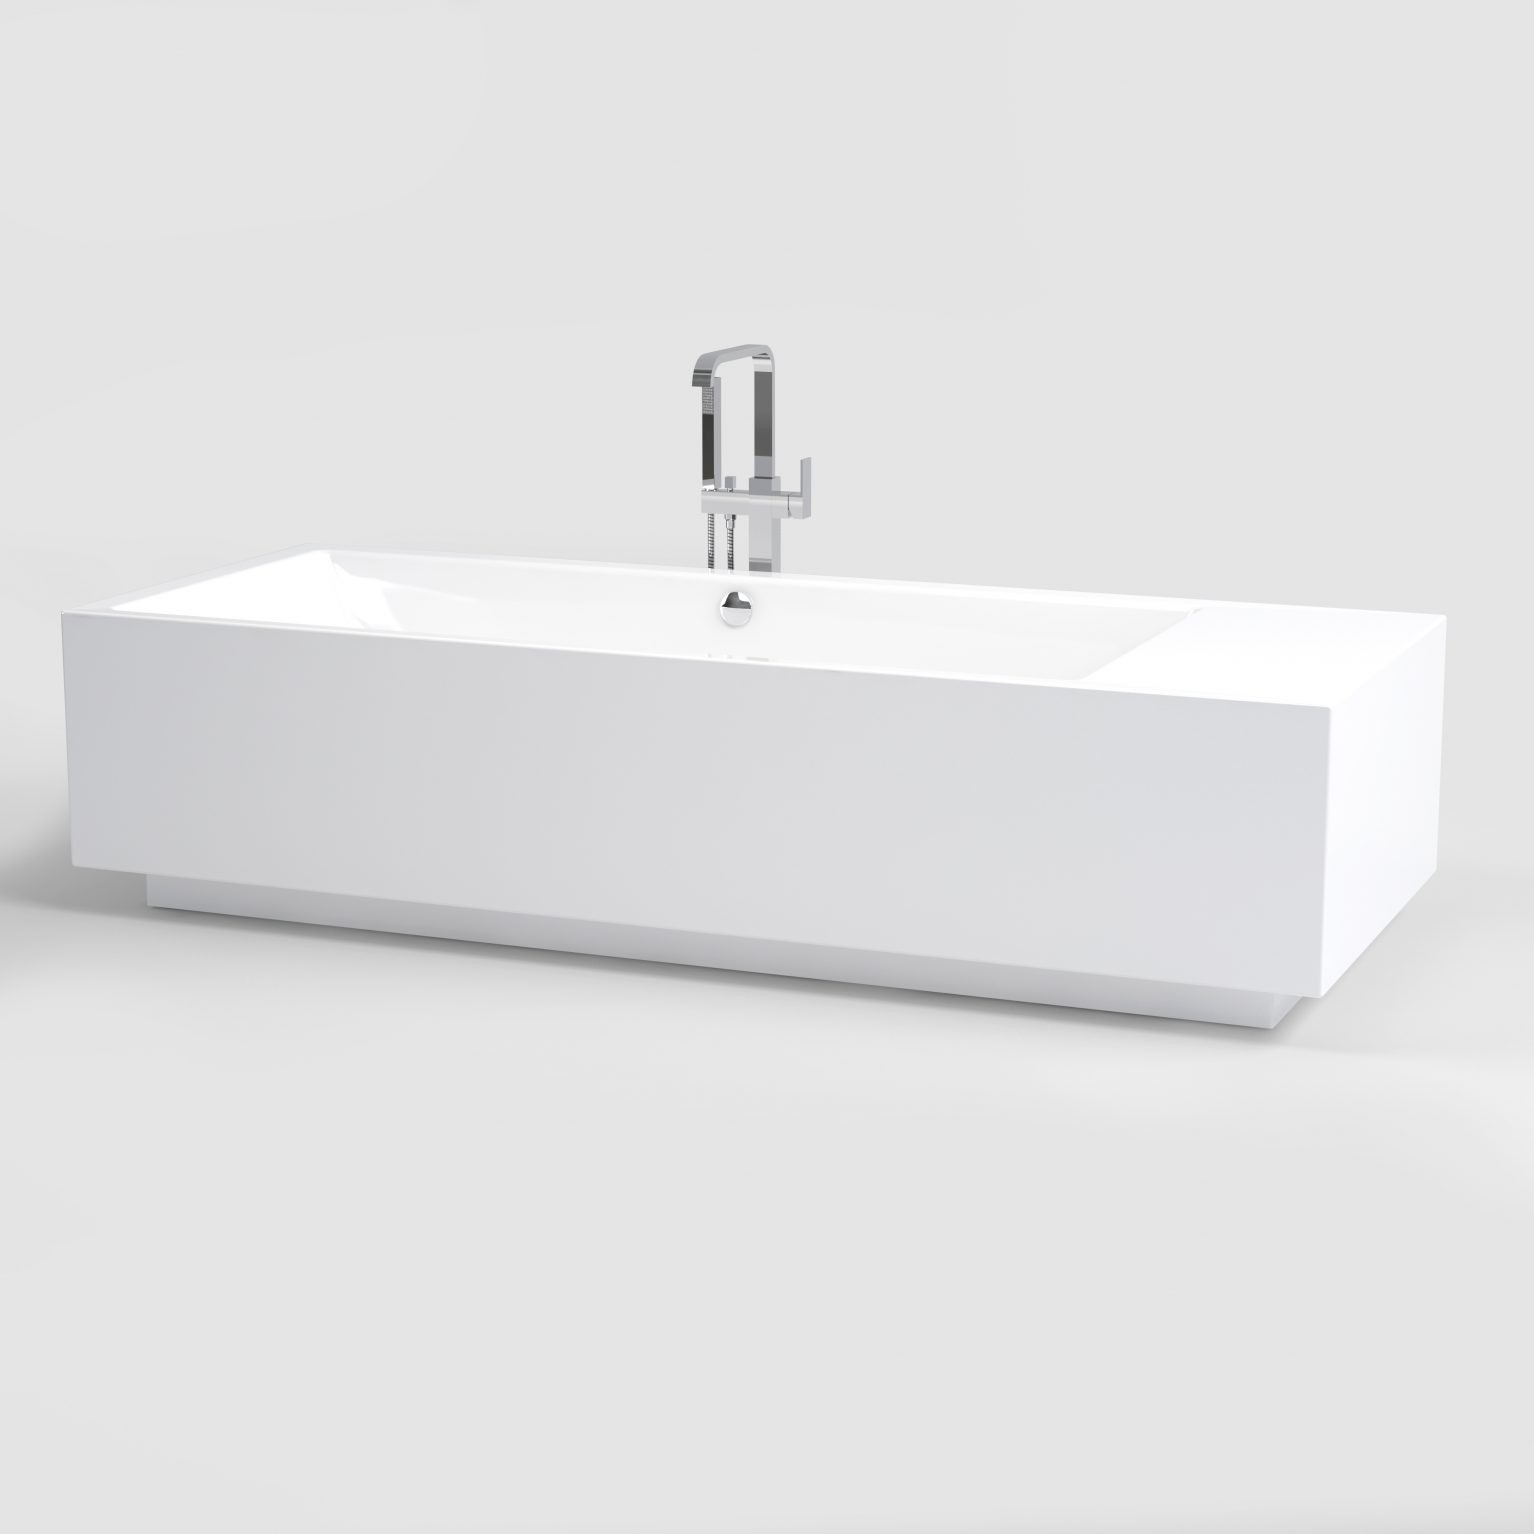 Wash-Me-design-ligbad-vrijstaand-wit-acryl-glanzend-inclusief-stop-go-afvoer-overloop-sifon-uitsparing-vereist-badkamer-luxe-sanitair-clou-IB0550010